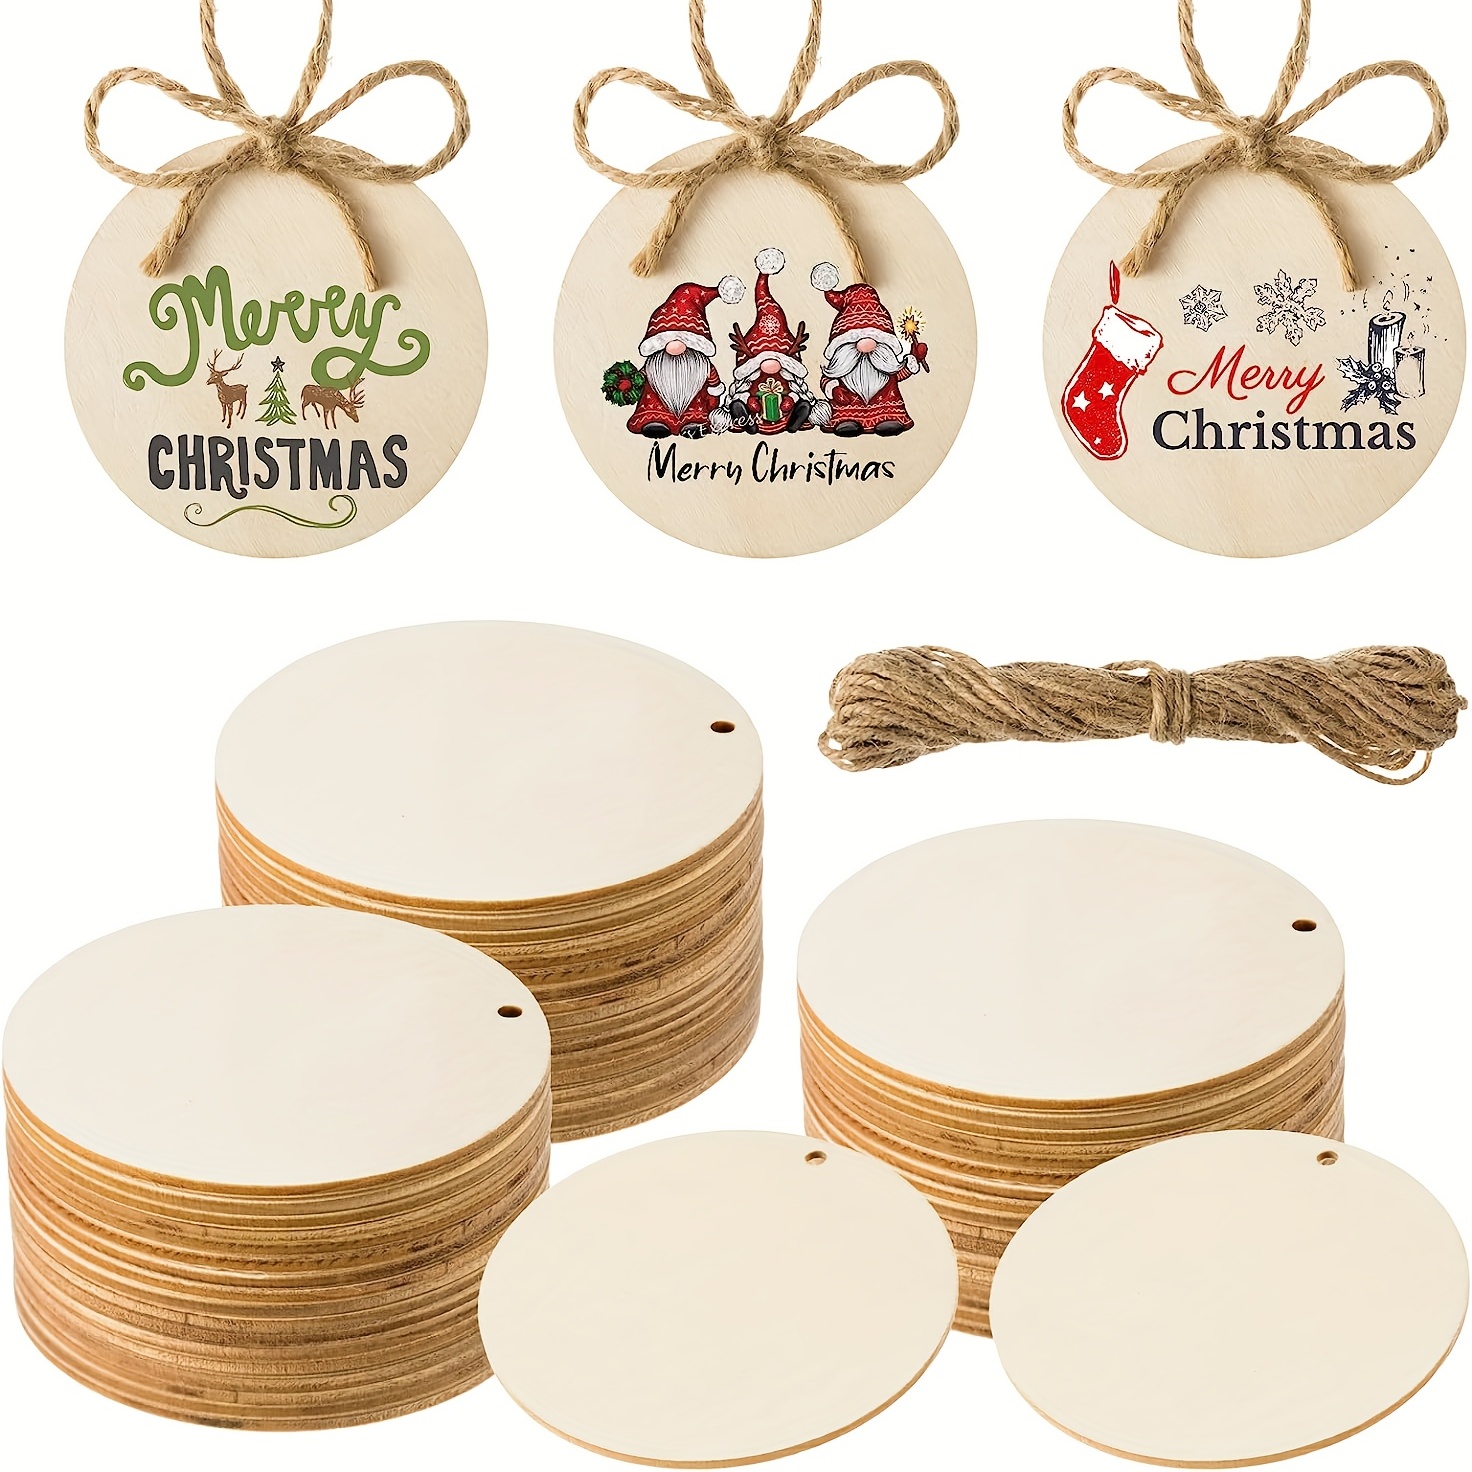 Round Wooden Discs Crafts, Round Wood Pieces Crafts